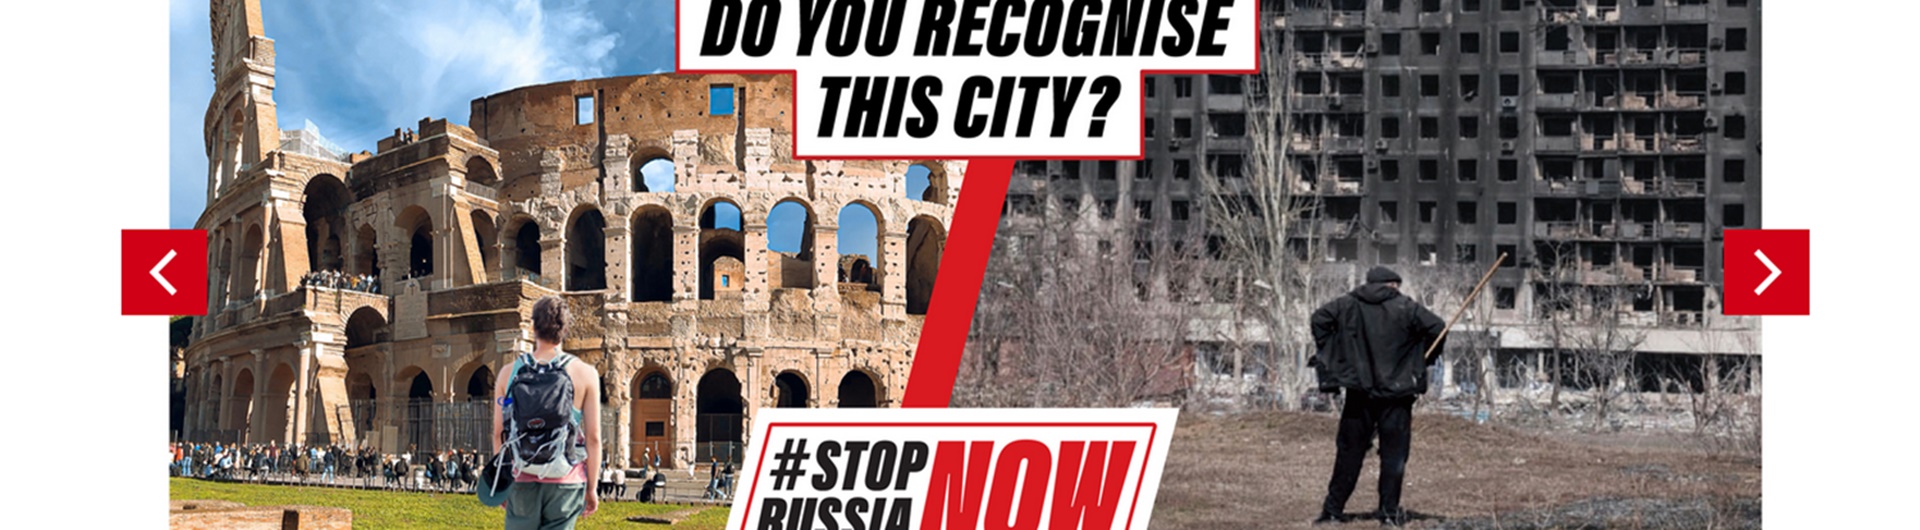 #StopRussiaNow – case study globalnej kampanii powstałej w Polsce